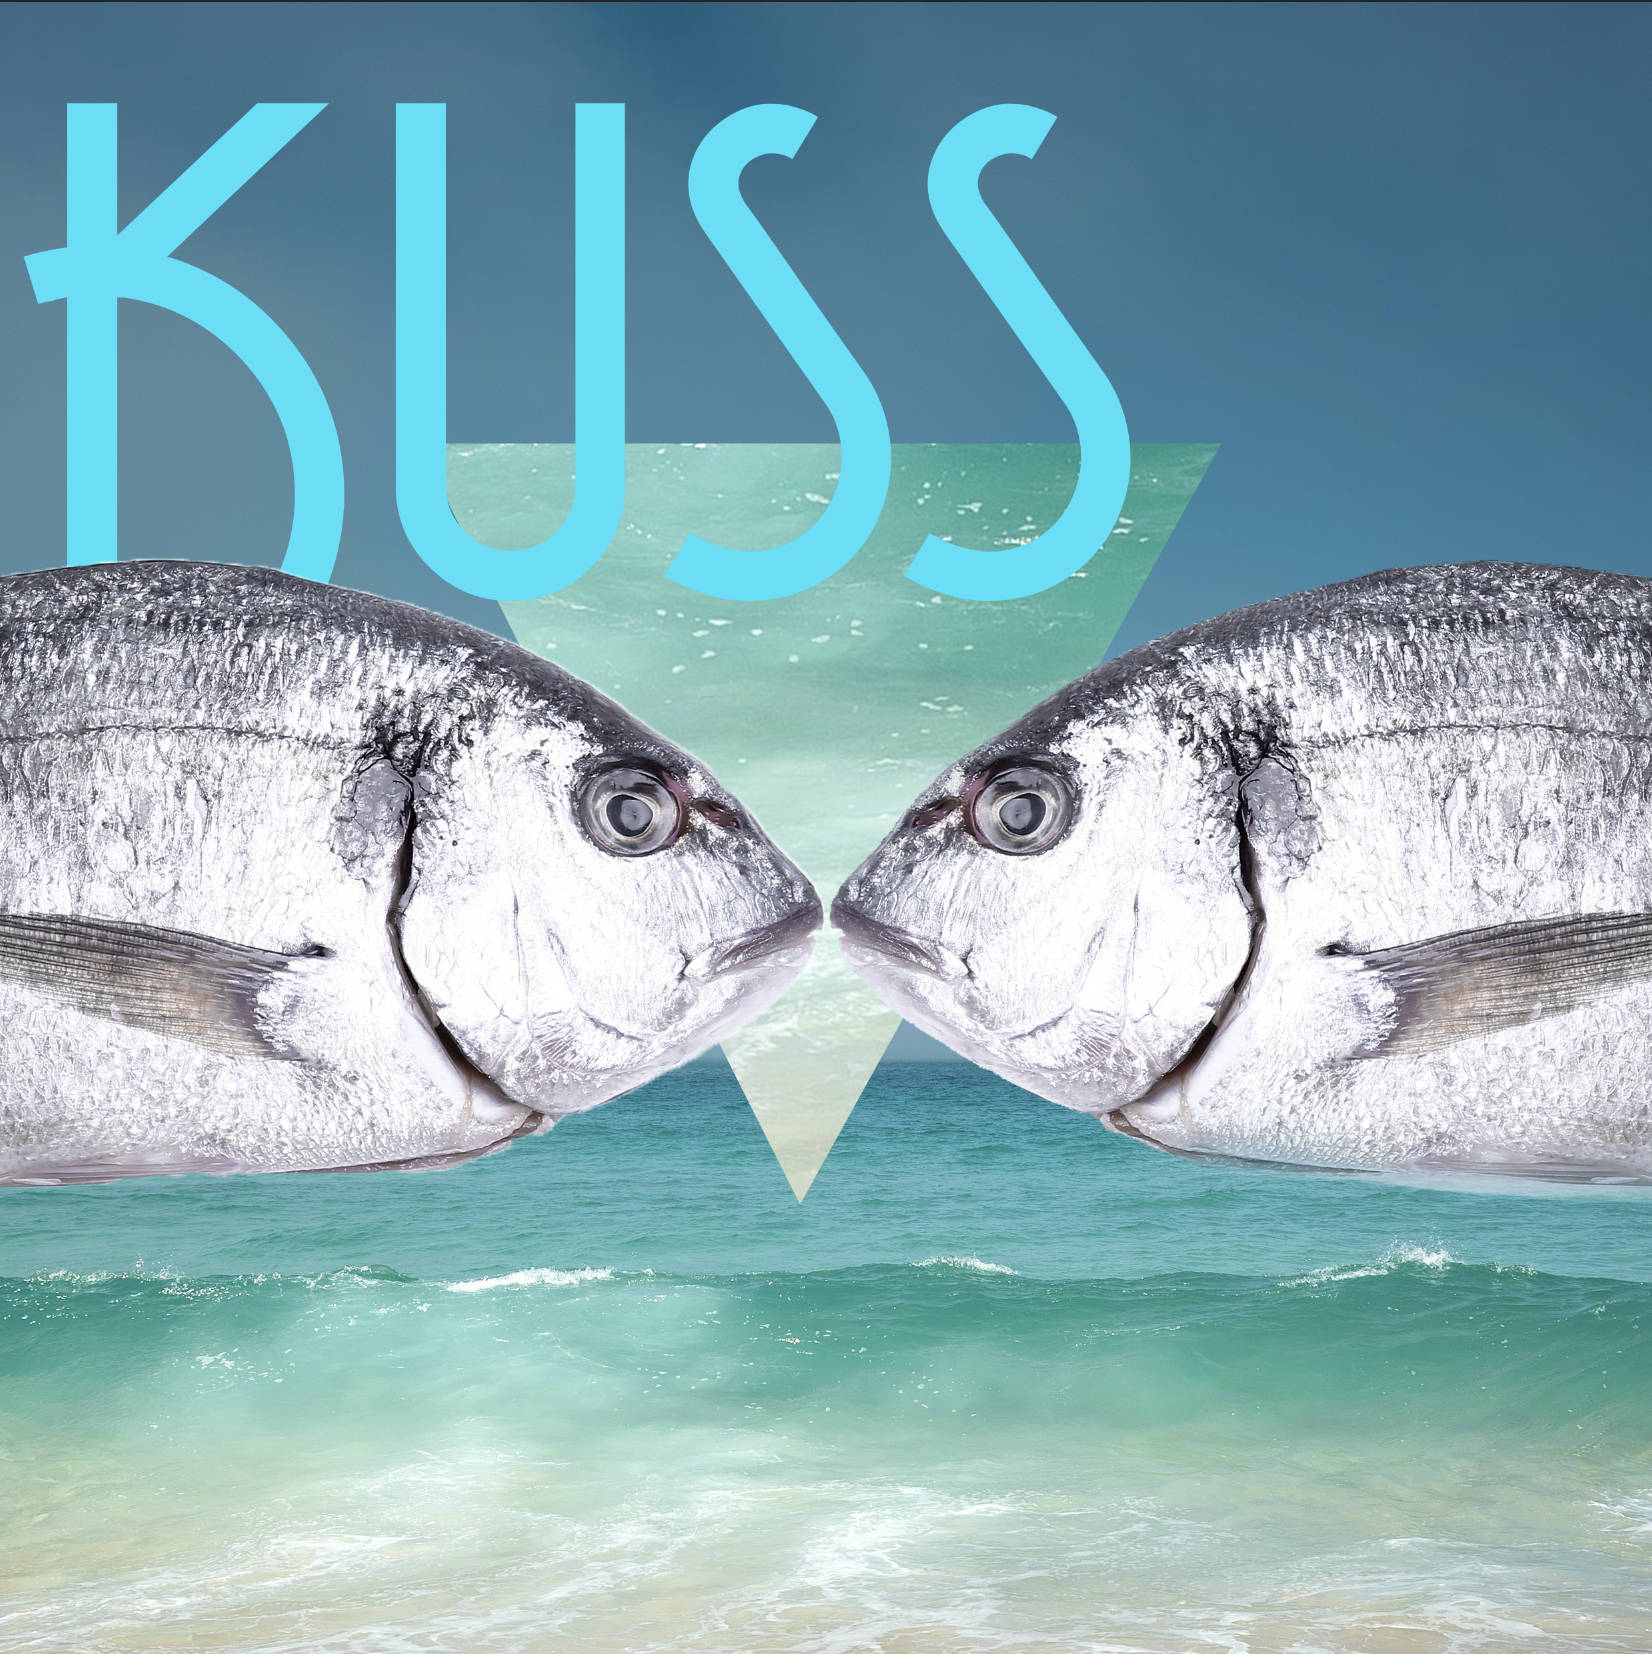 Zwei Fische die sich zum Welt-Kuss-Tag küssen